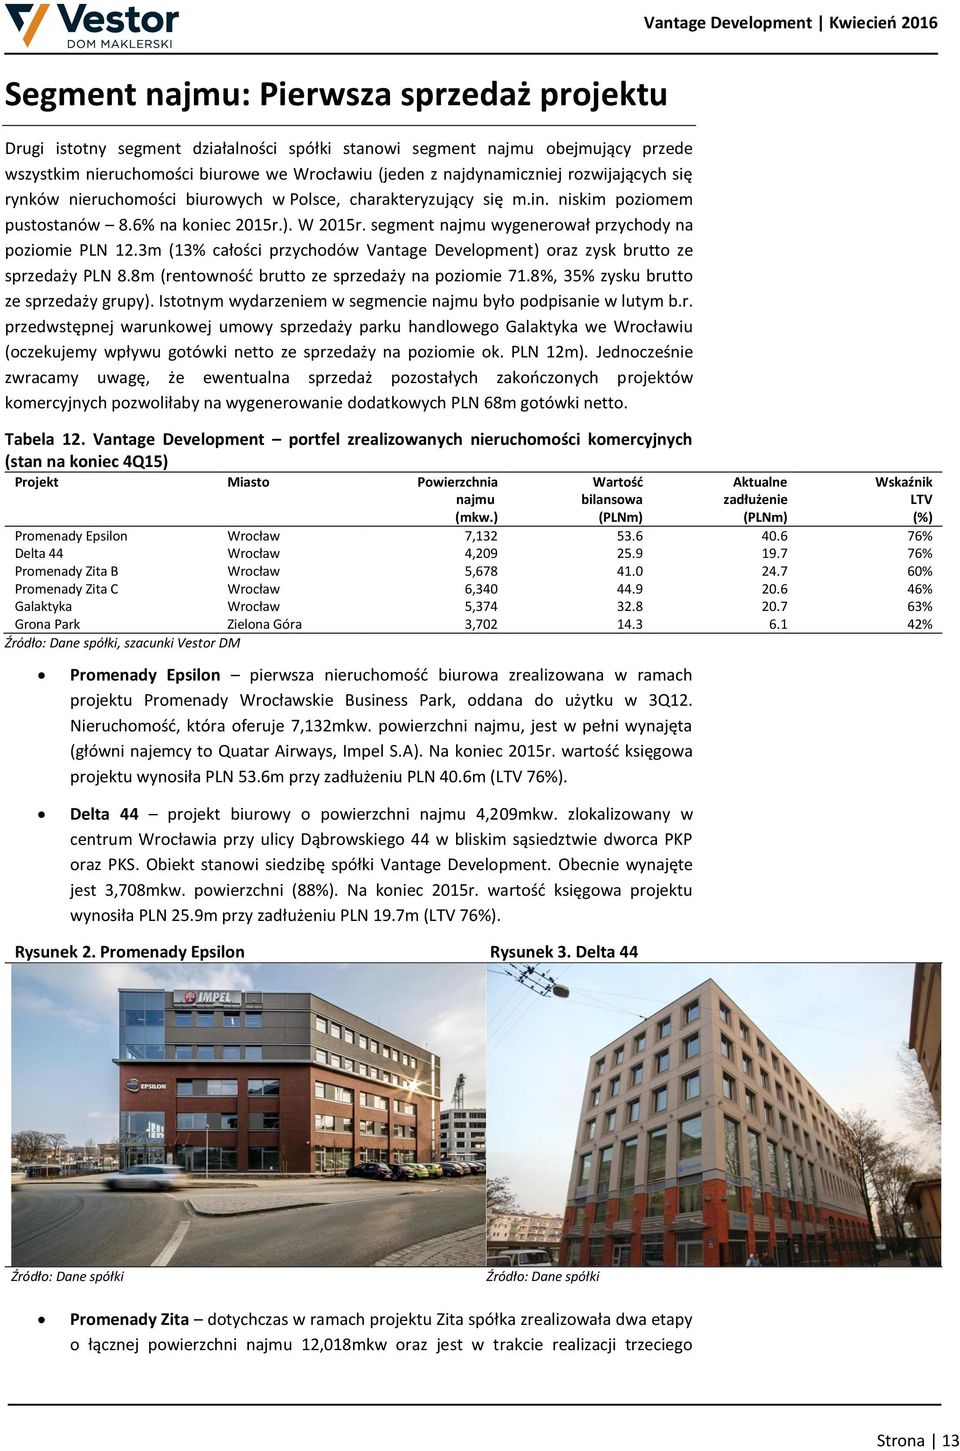 segment najmu wygenerował przychody na poziomie PLN 12.3m (13% całości przychodów Vantage Development) oraz zysk brutto ze sprzedaży PLN 8.8m (rentowność brutto ze sprzedaży na poziomie 71.